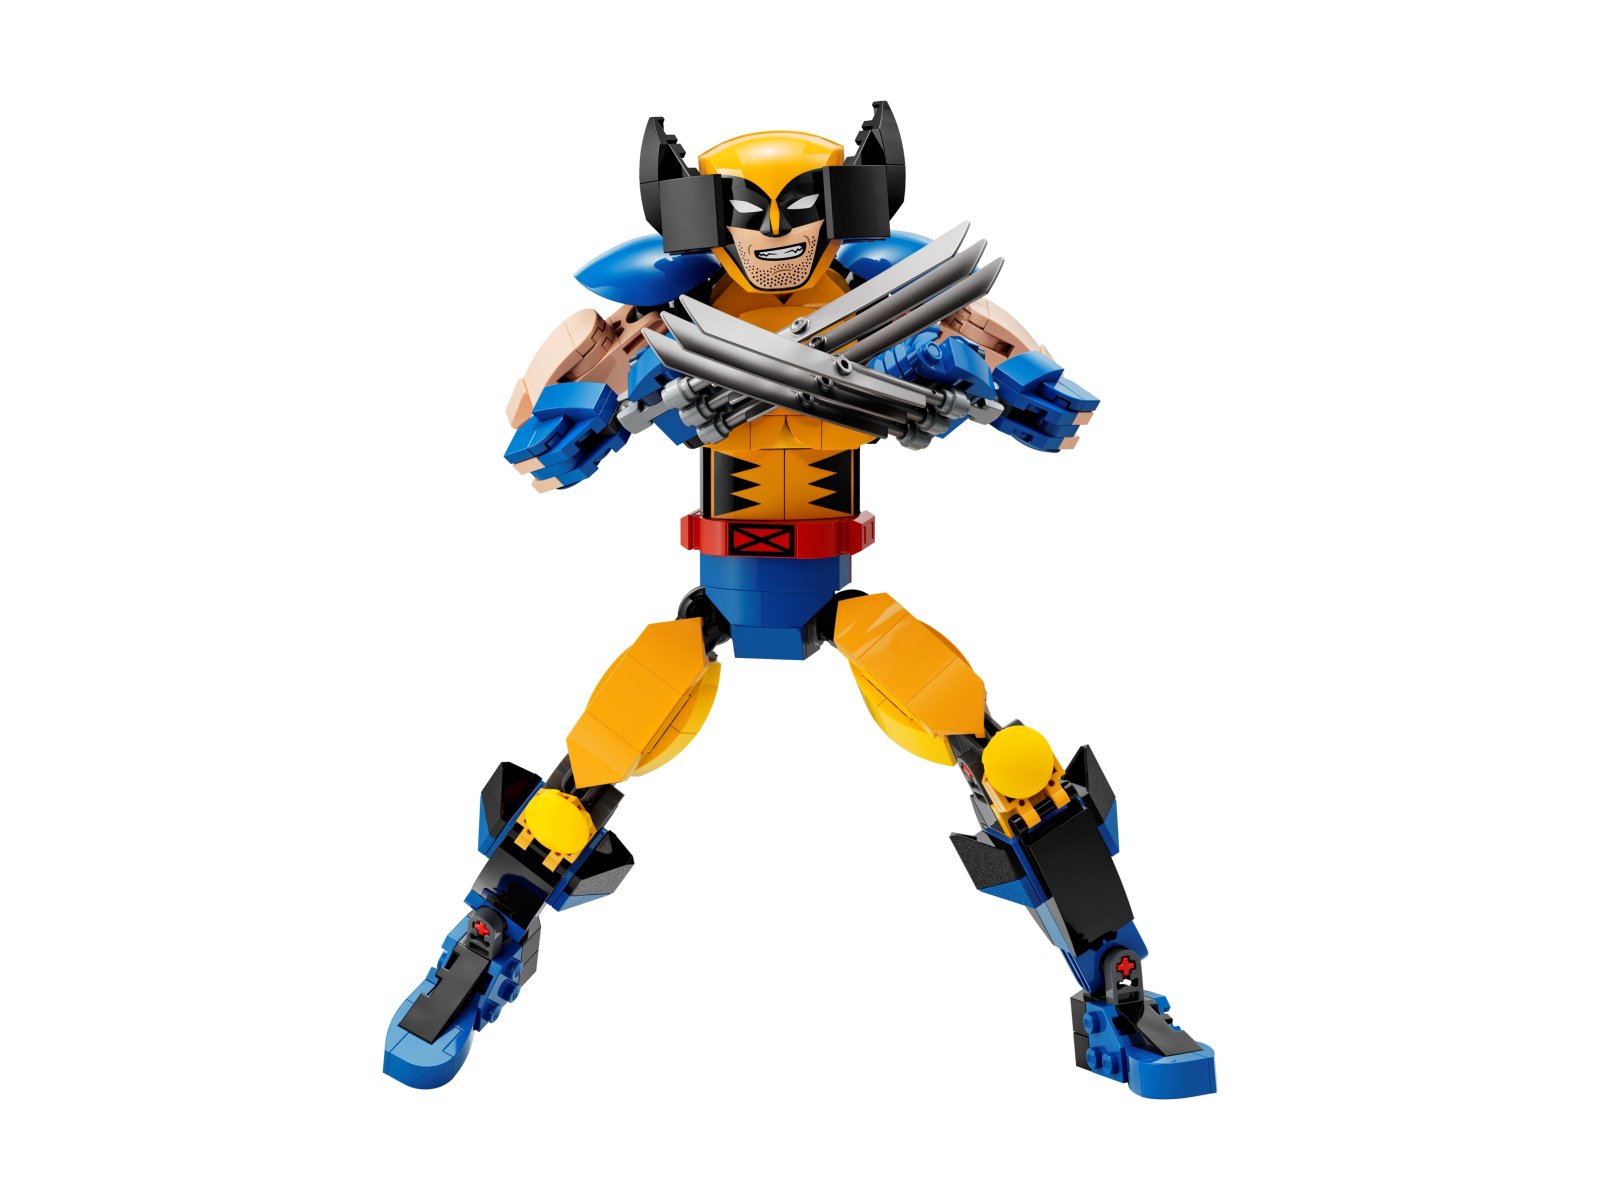 LEGO Marvel 76257 Figurka Wolverine’a do zbudowania